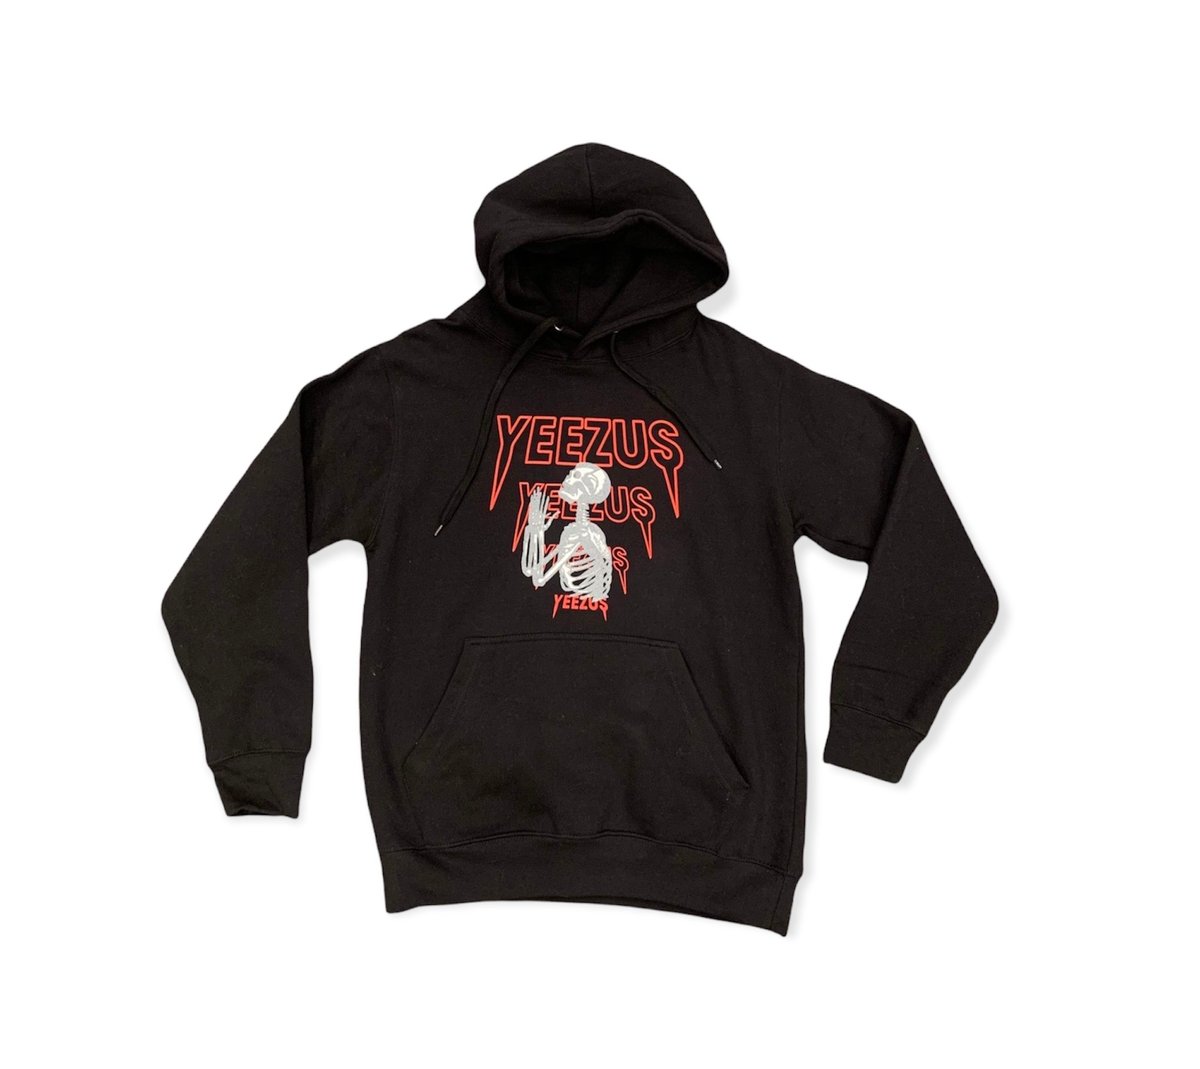 Yeezus Yeezy Skeleton Hoodie In Black/Red | THE BLUEPRINT